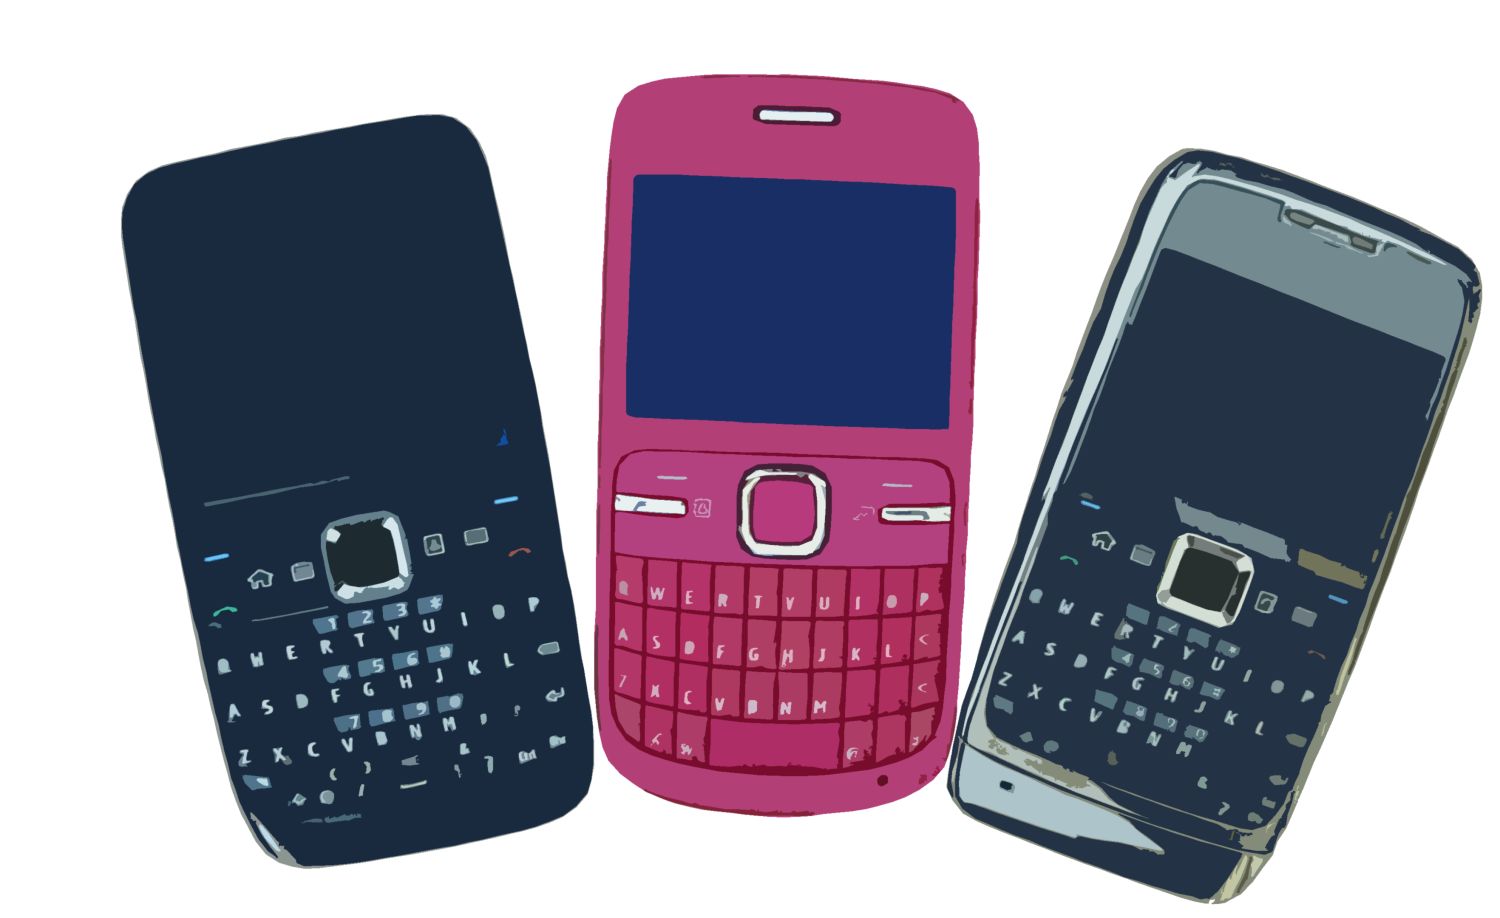 fond d'écran du clavier,téléphone portable,gadget,dispositif de communication,téléphone,dispositif de communication portable